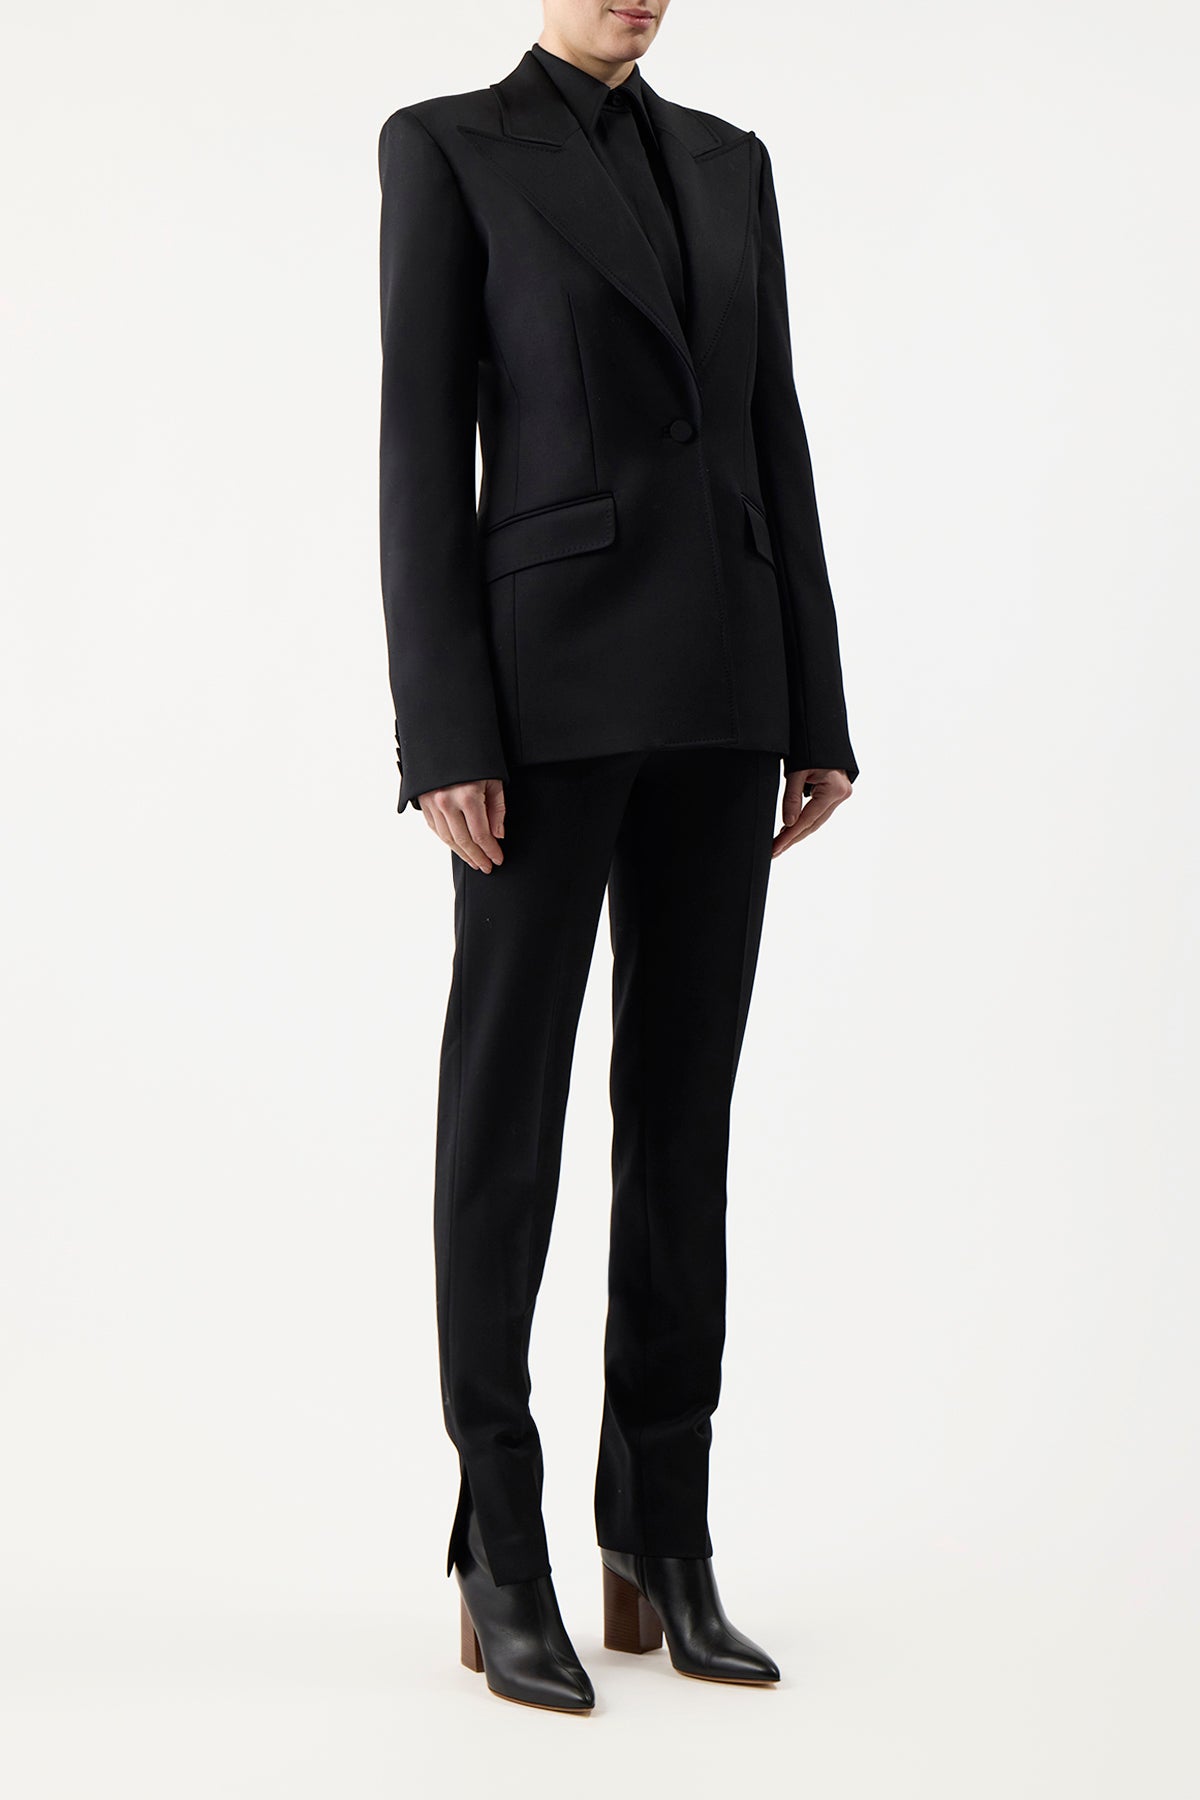 Leiva Blazer in Black Sportswear Wool